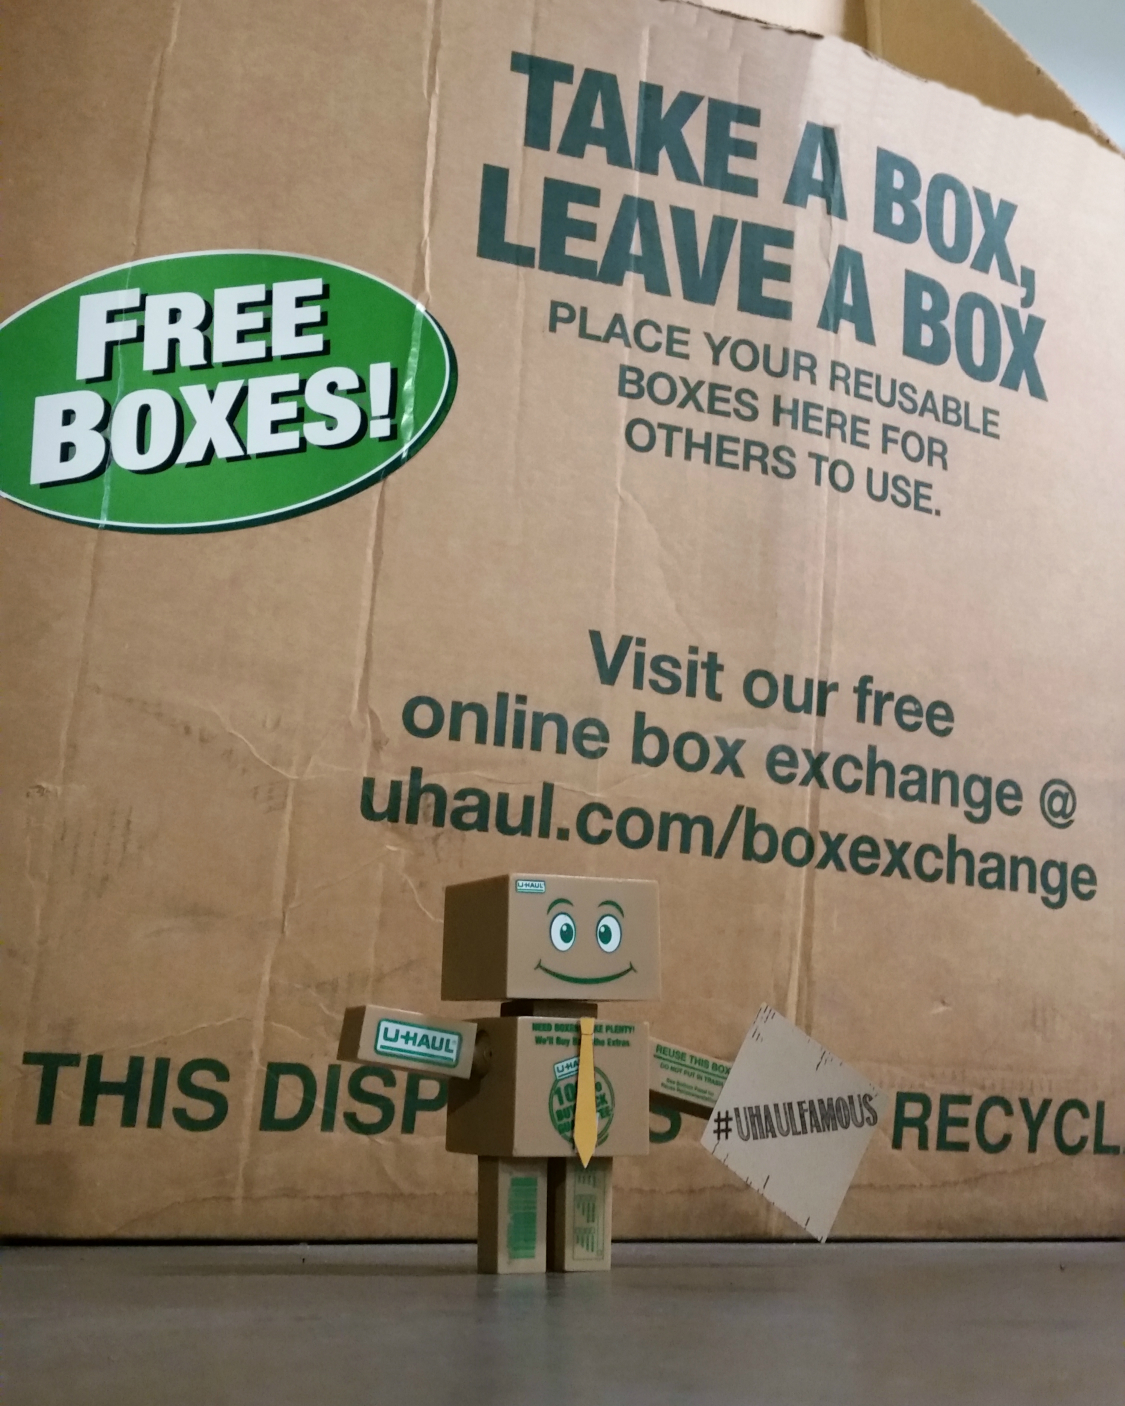 Boxman recycles using Take a Box, Leave a Box